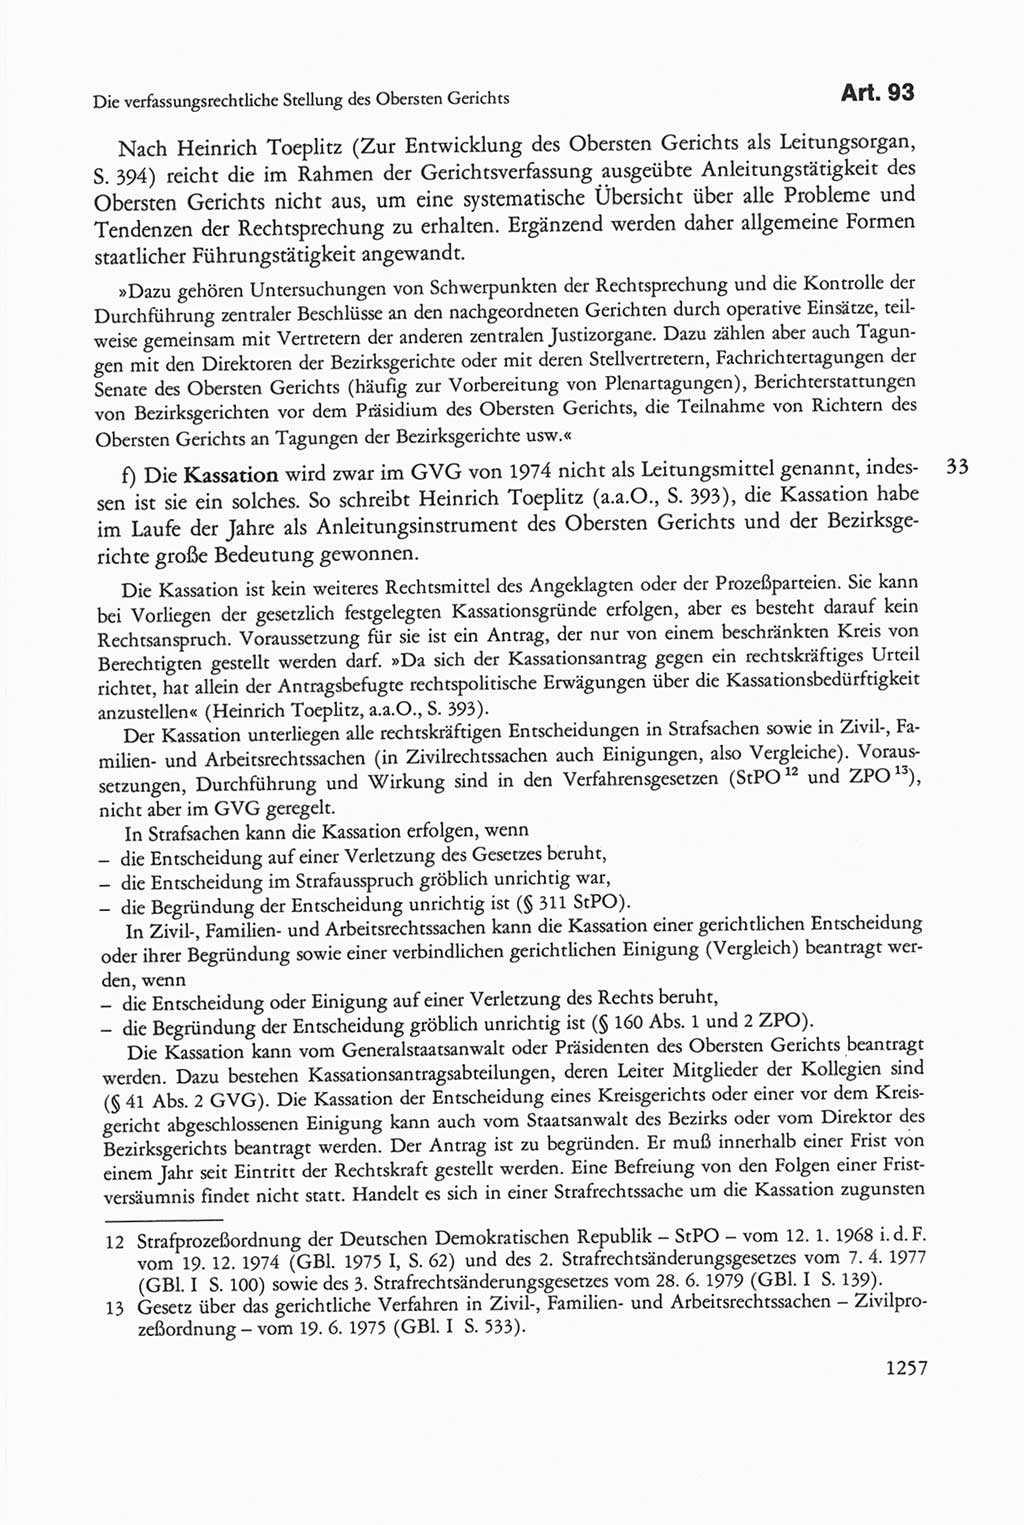 Die sozialistische Verfassung der Deutschen Demokratischen Republik (DDR), Kommentar 1982, Seite 1257 (Soz. Verf. DDR Komm. 1982, S. 1257)